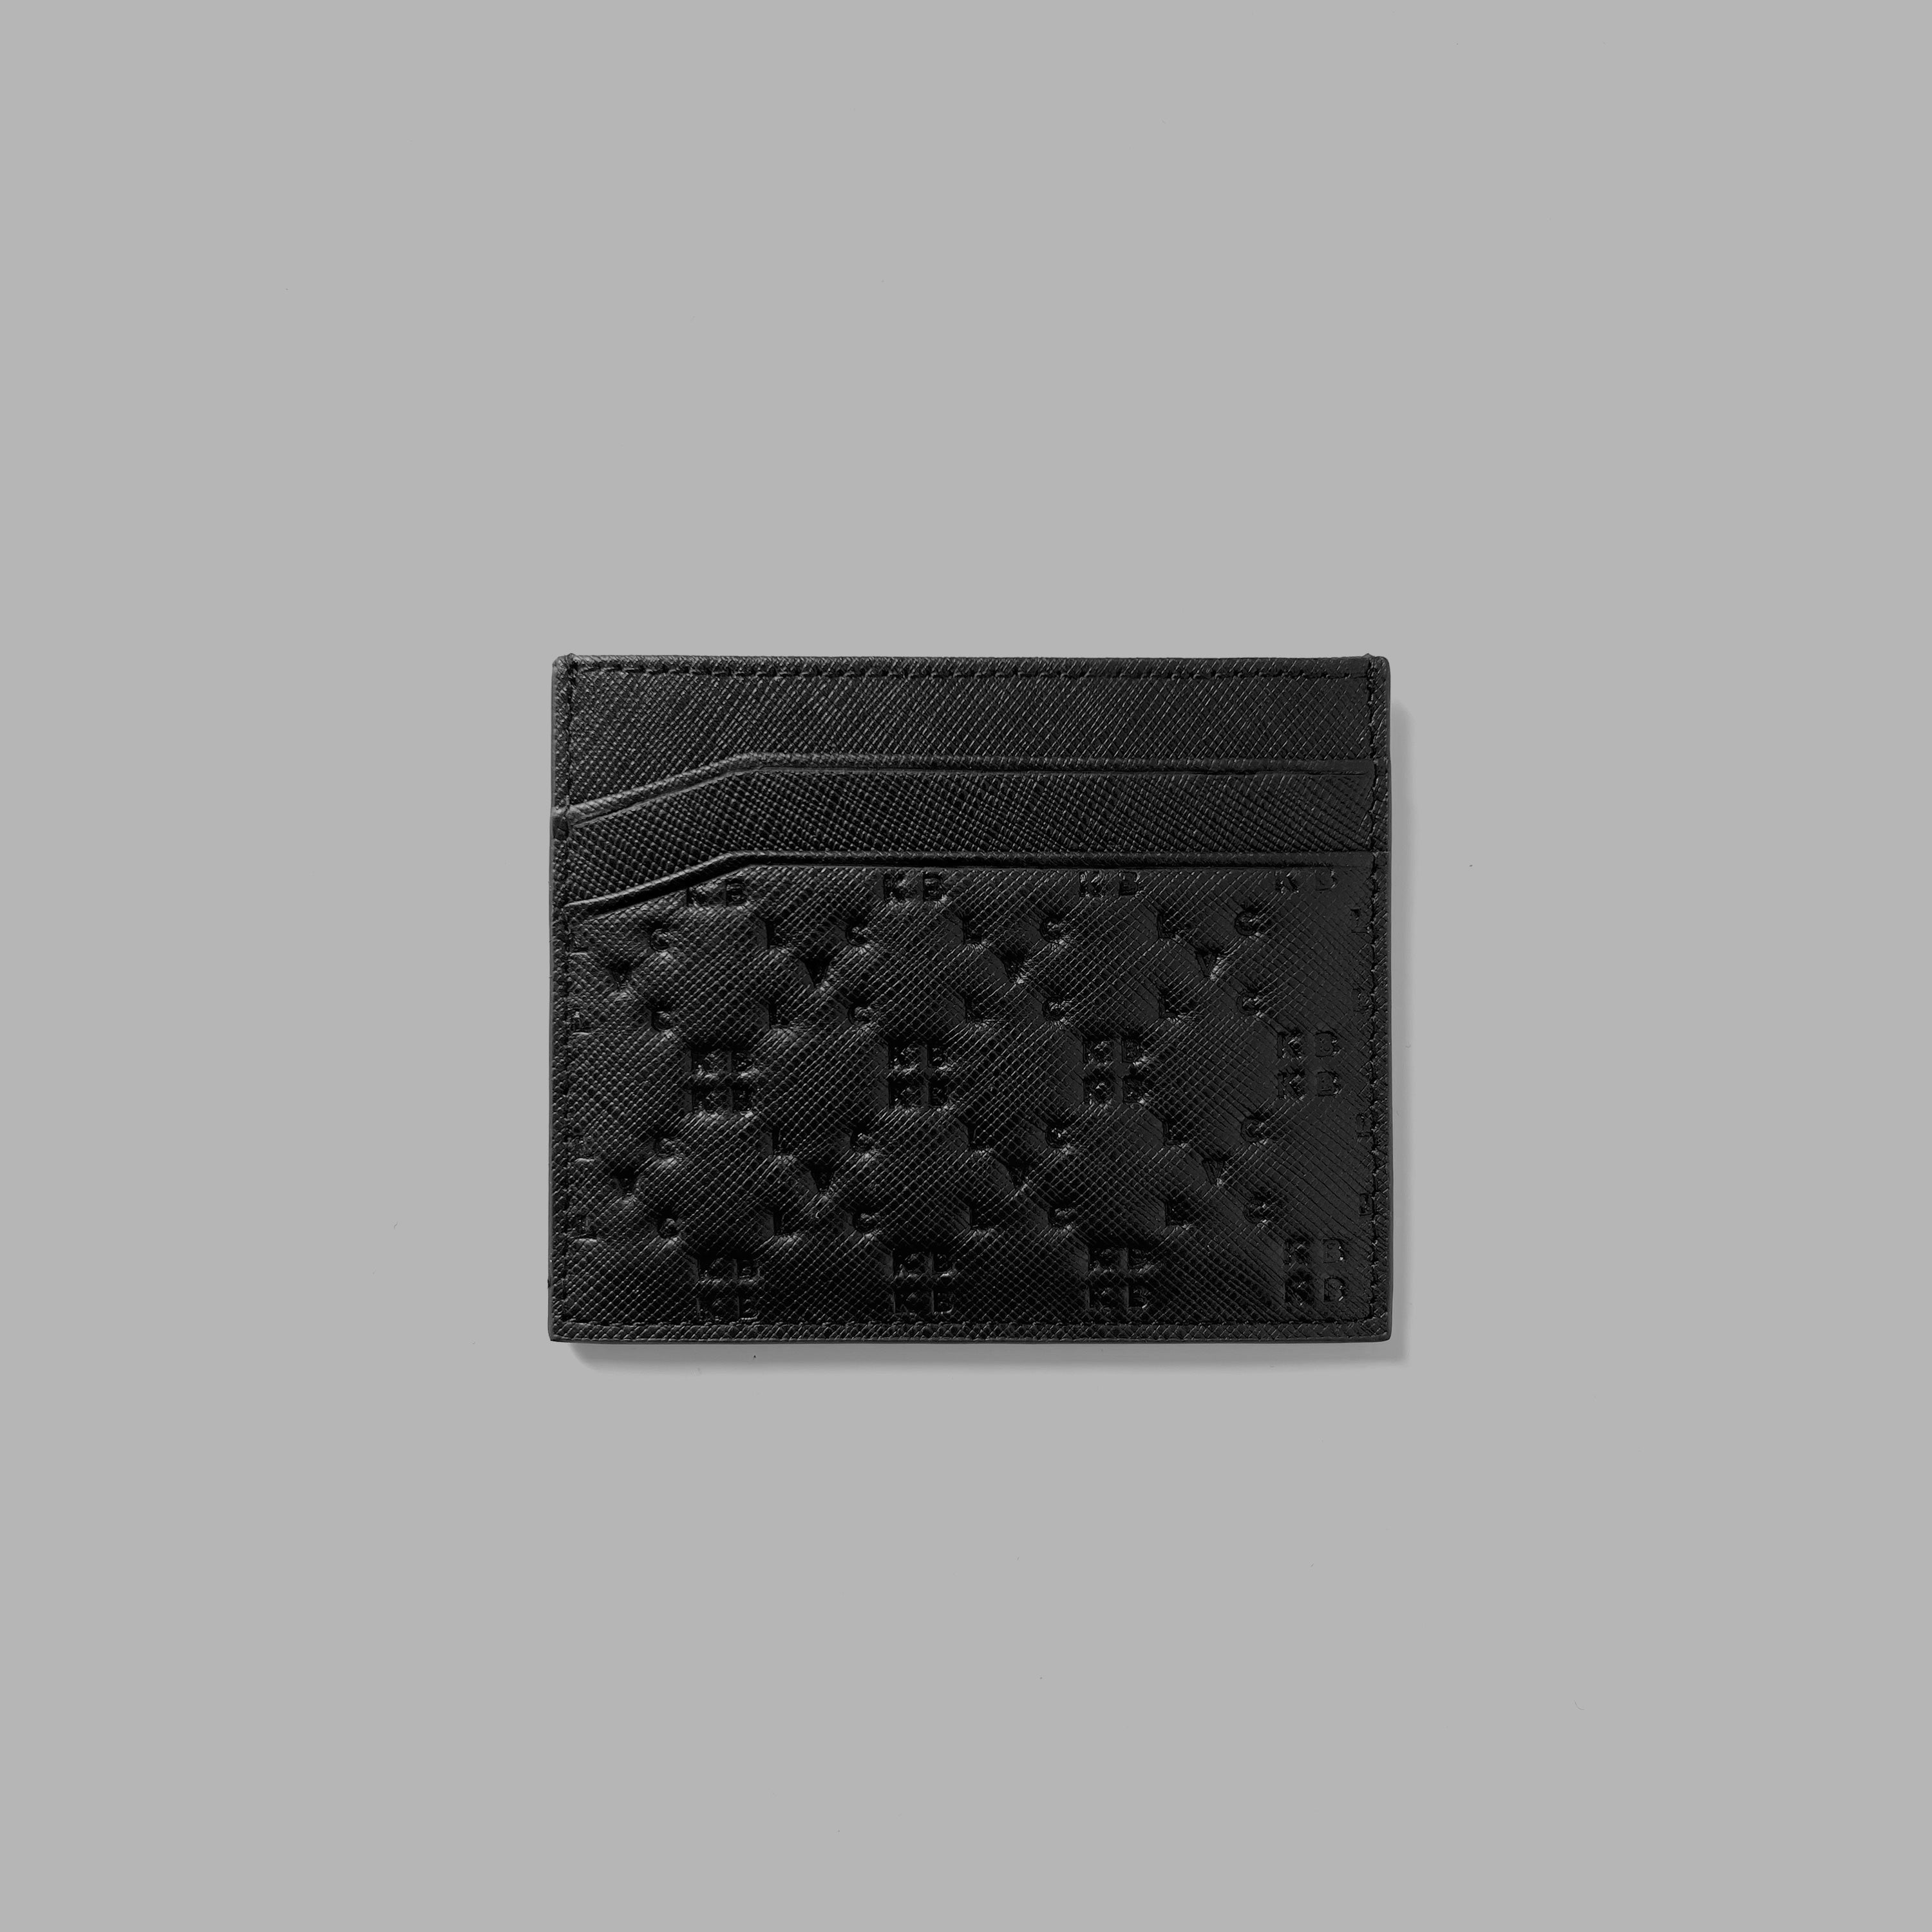 Blvck Paris Women's Classic Zipped Wallet